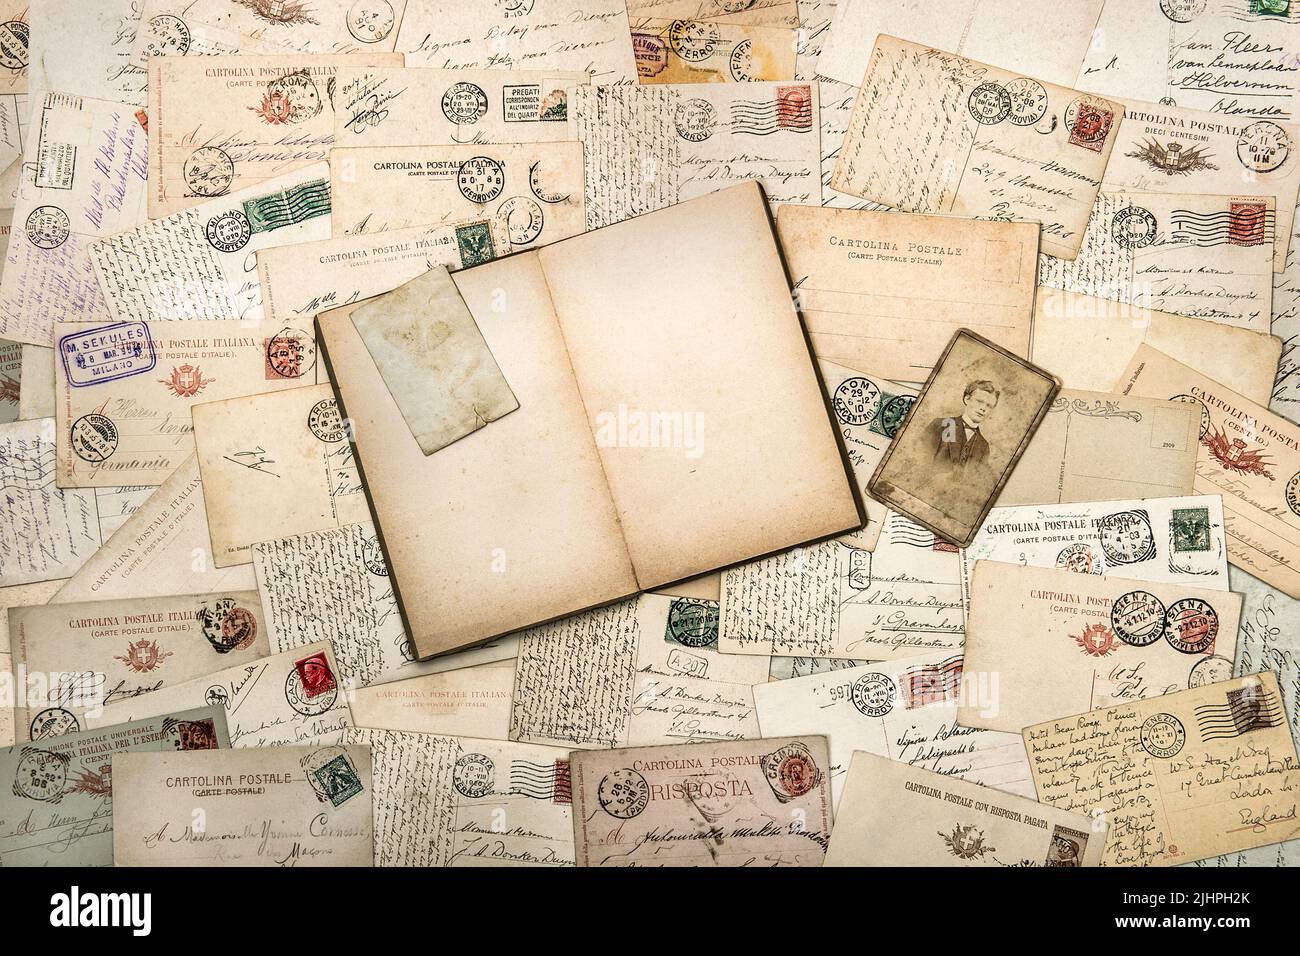 Arrière-plan du modèle de papier de journal publicitaire vintage. Vieux livre, écrits à la main, cartes postales Banque D'Images